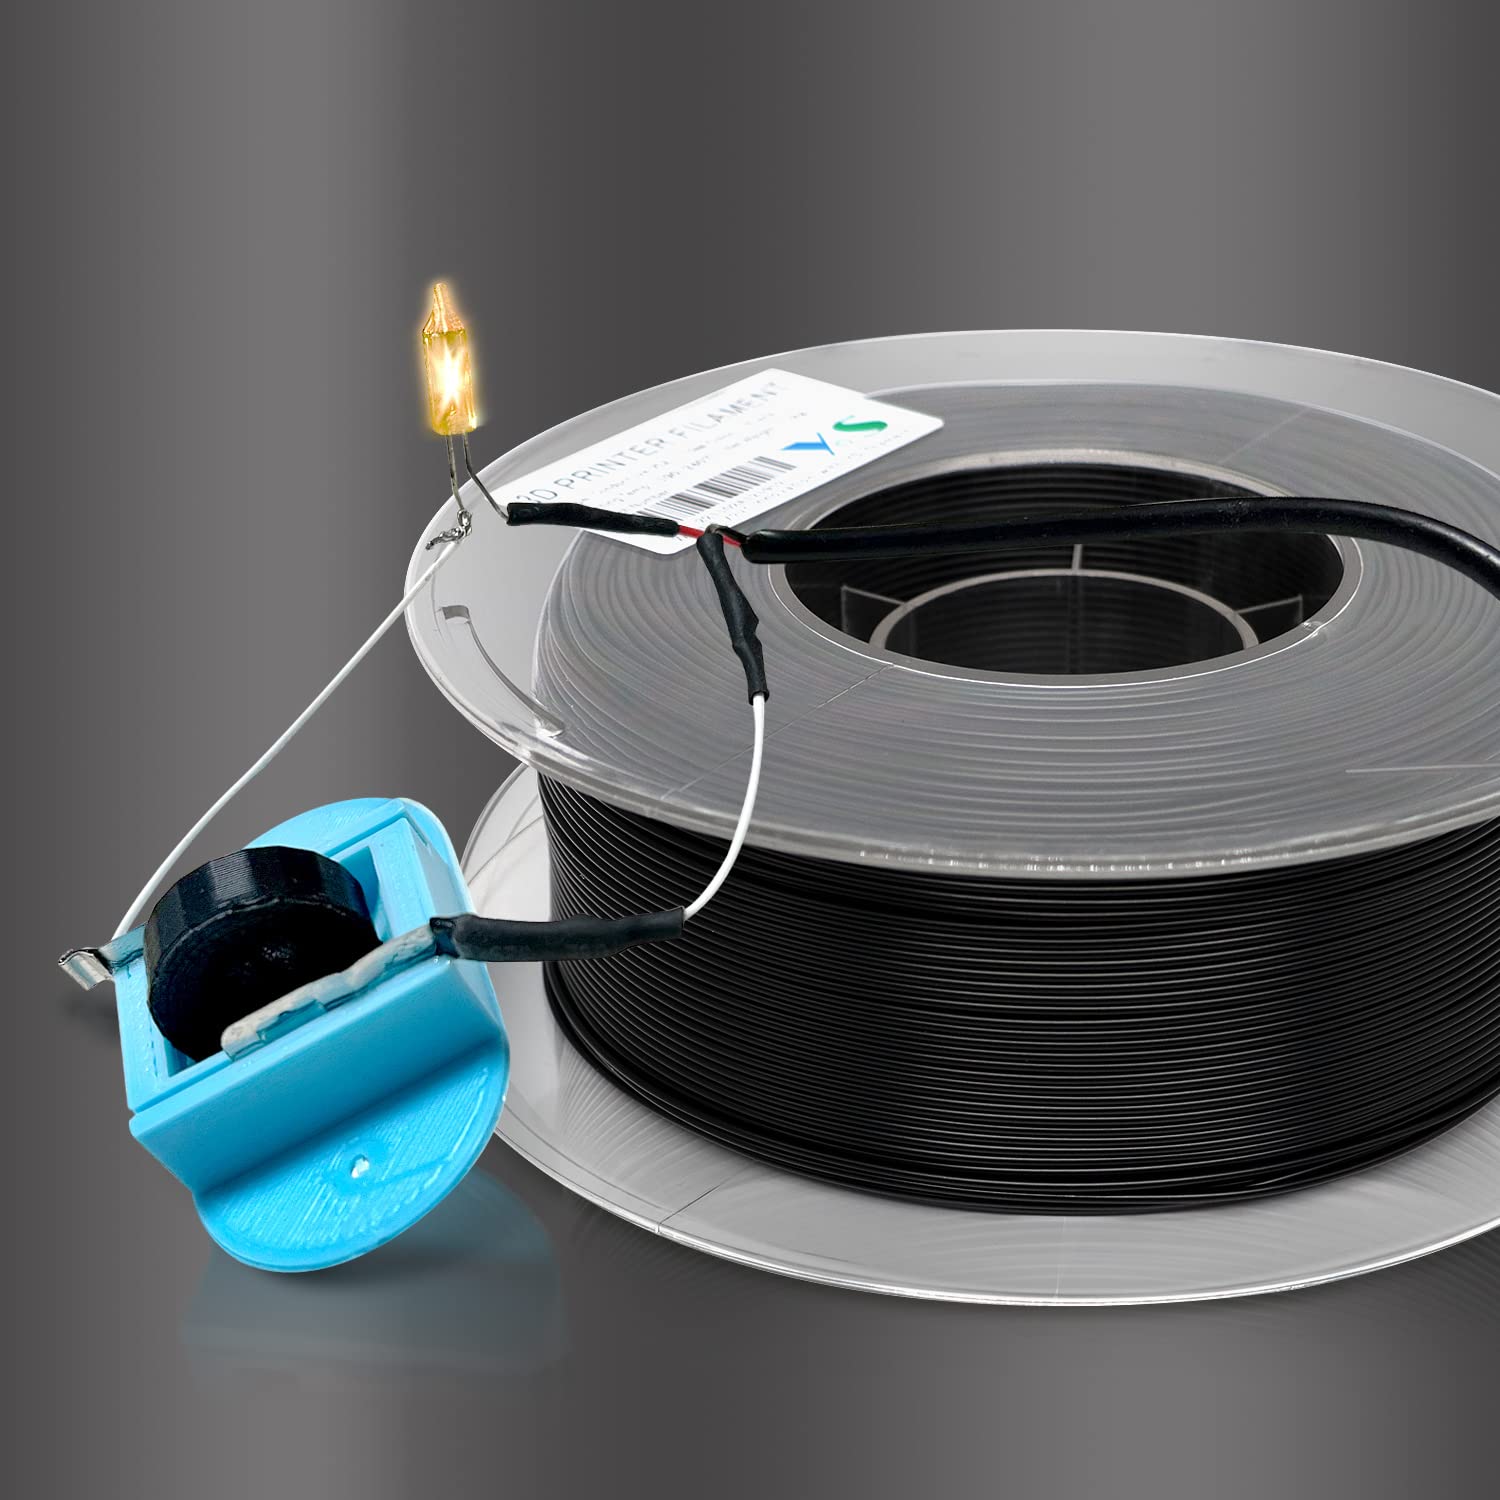 Yousu Conductive Pla Filament 175 Mm For 3D Printer & 3D Pen 1 Kg (22 Lbs) Black